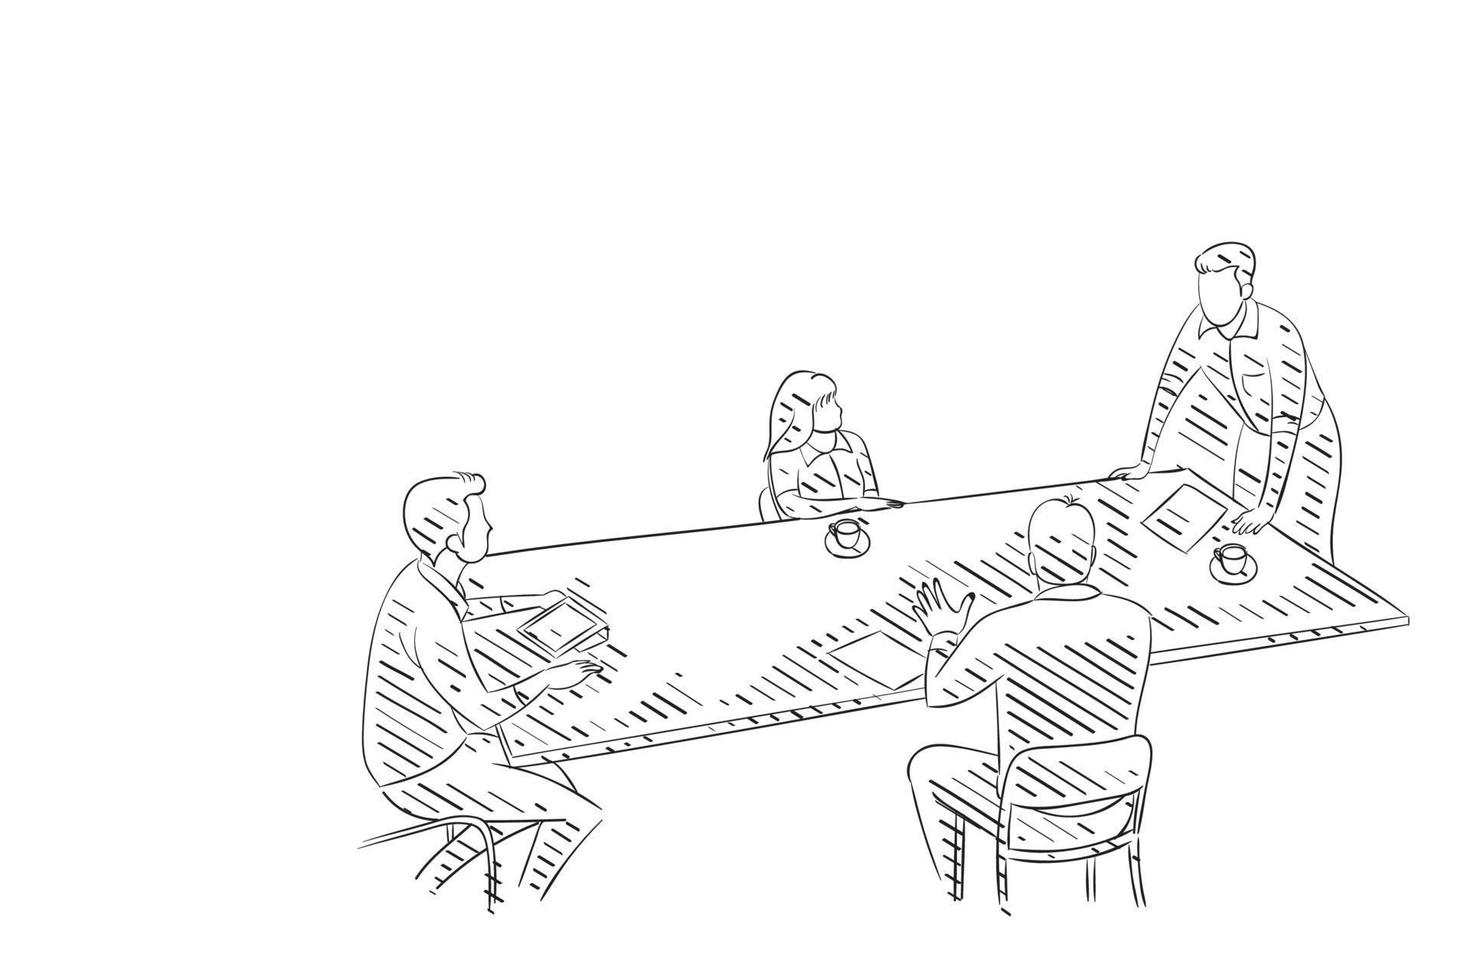 disegnato a mano della riunione di lavoro nell'illustrazione di vettore dell'ufficio